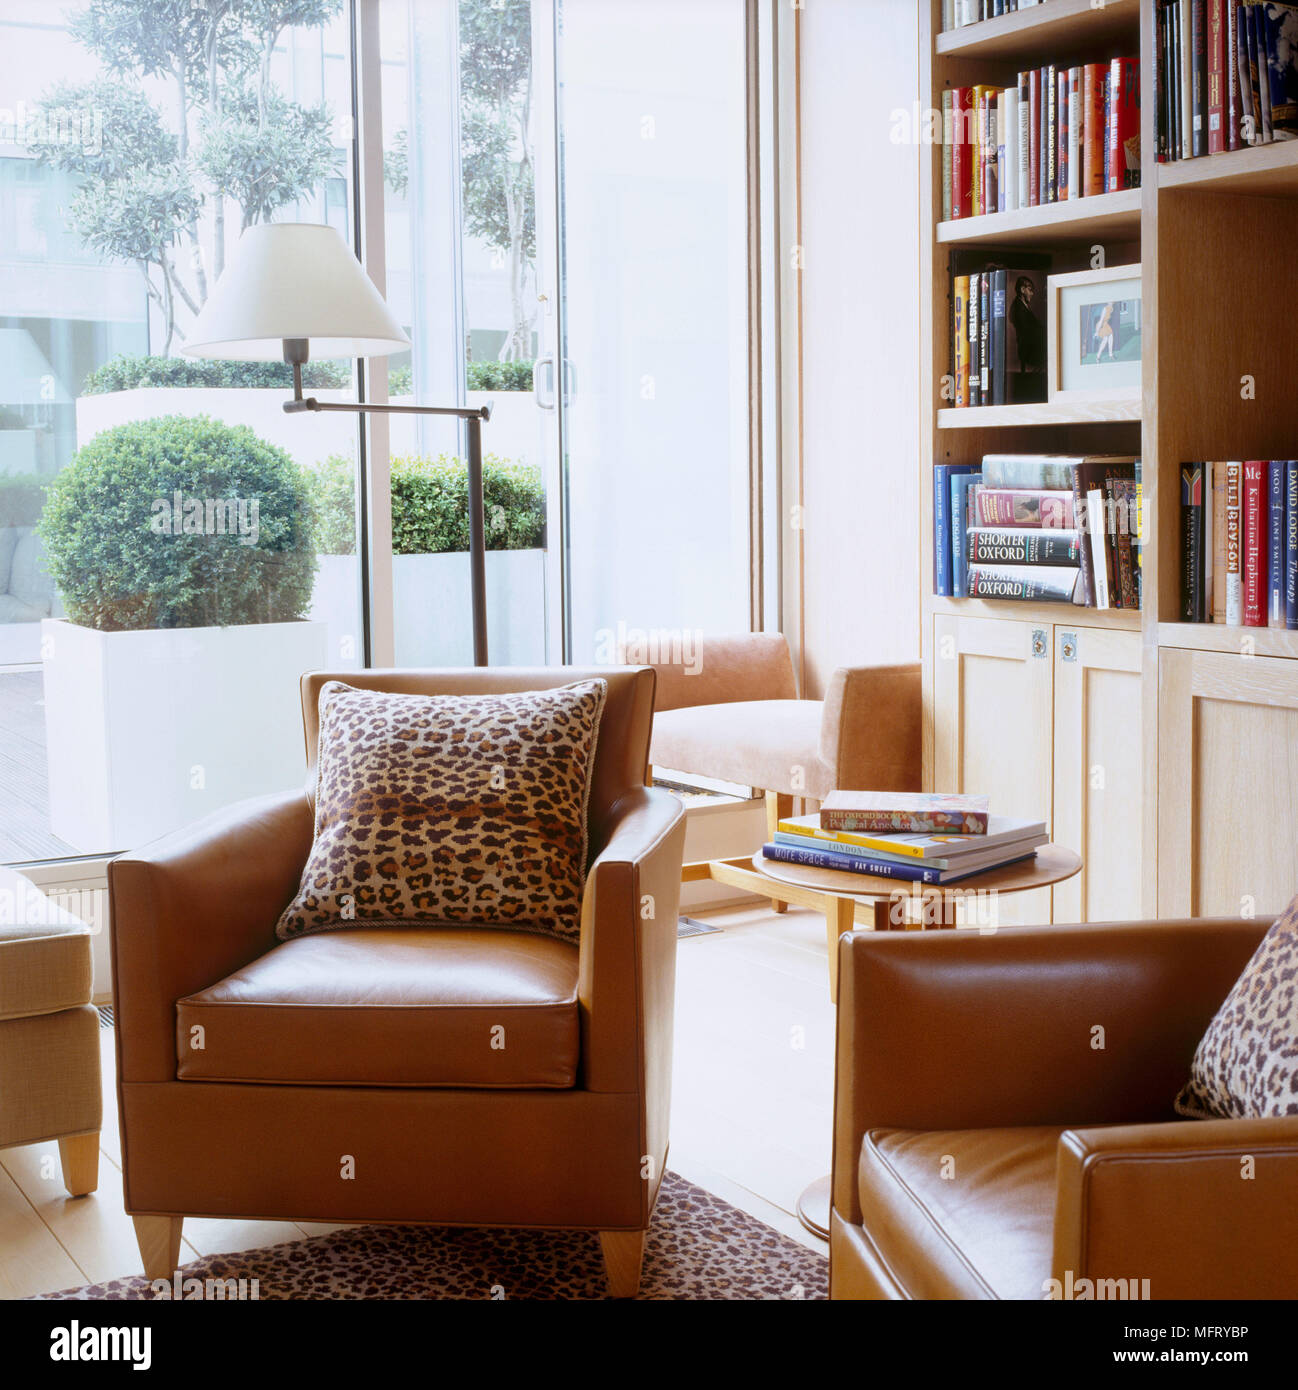 Una moderna sala de estar con sillones de cuero marrón estantería mesa lateral redonda lámpara de piso cojines de piel de leopardo de impresión Foto de stock